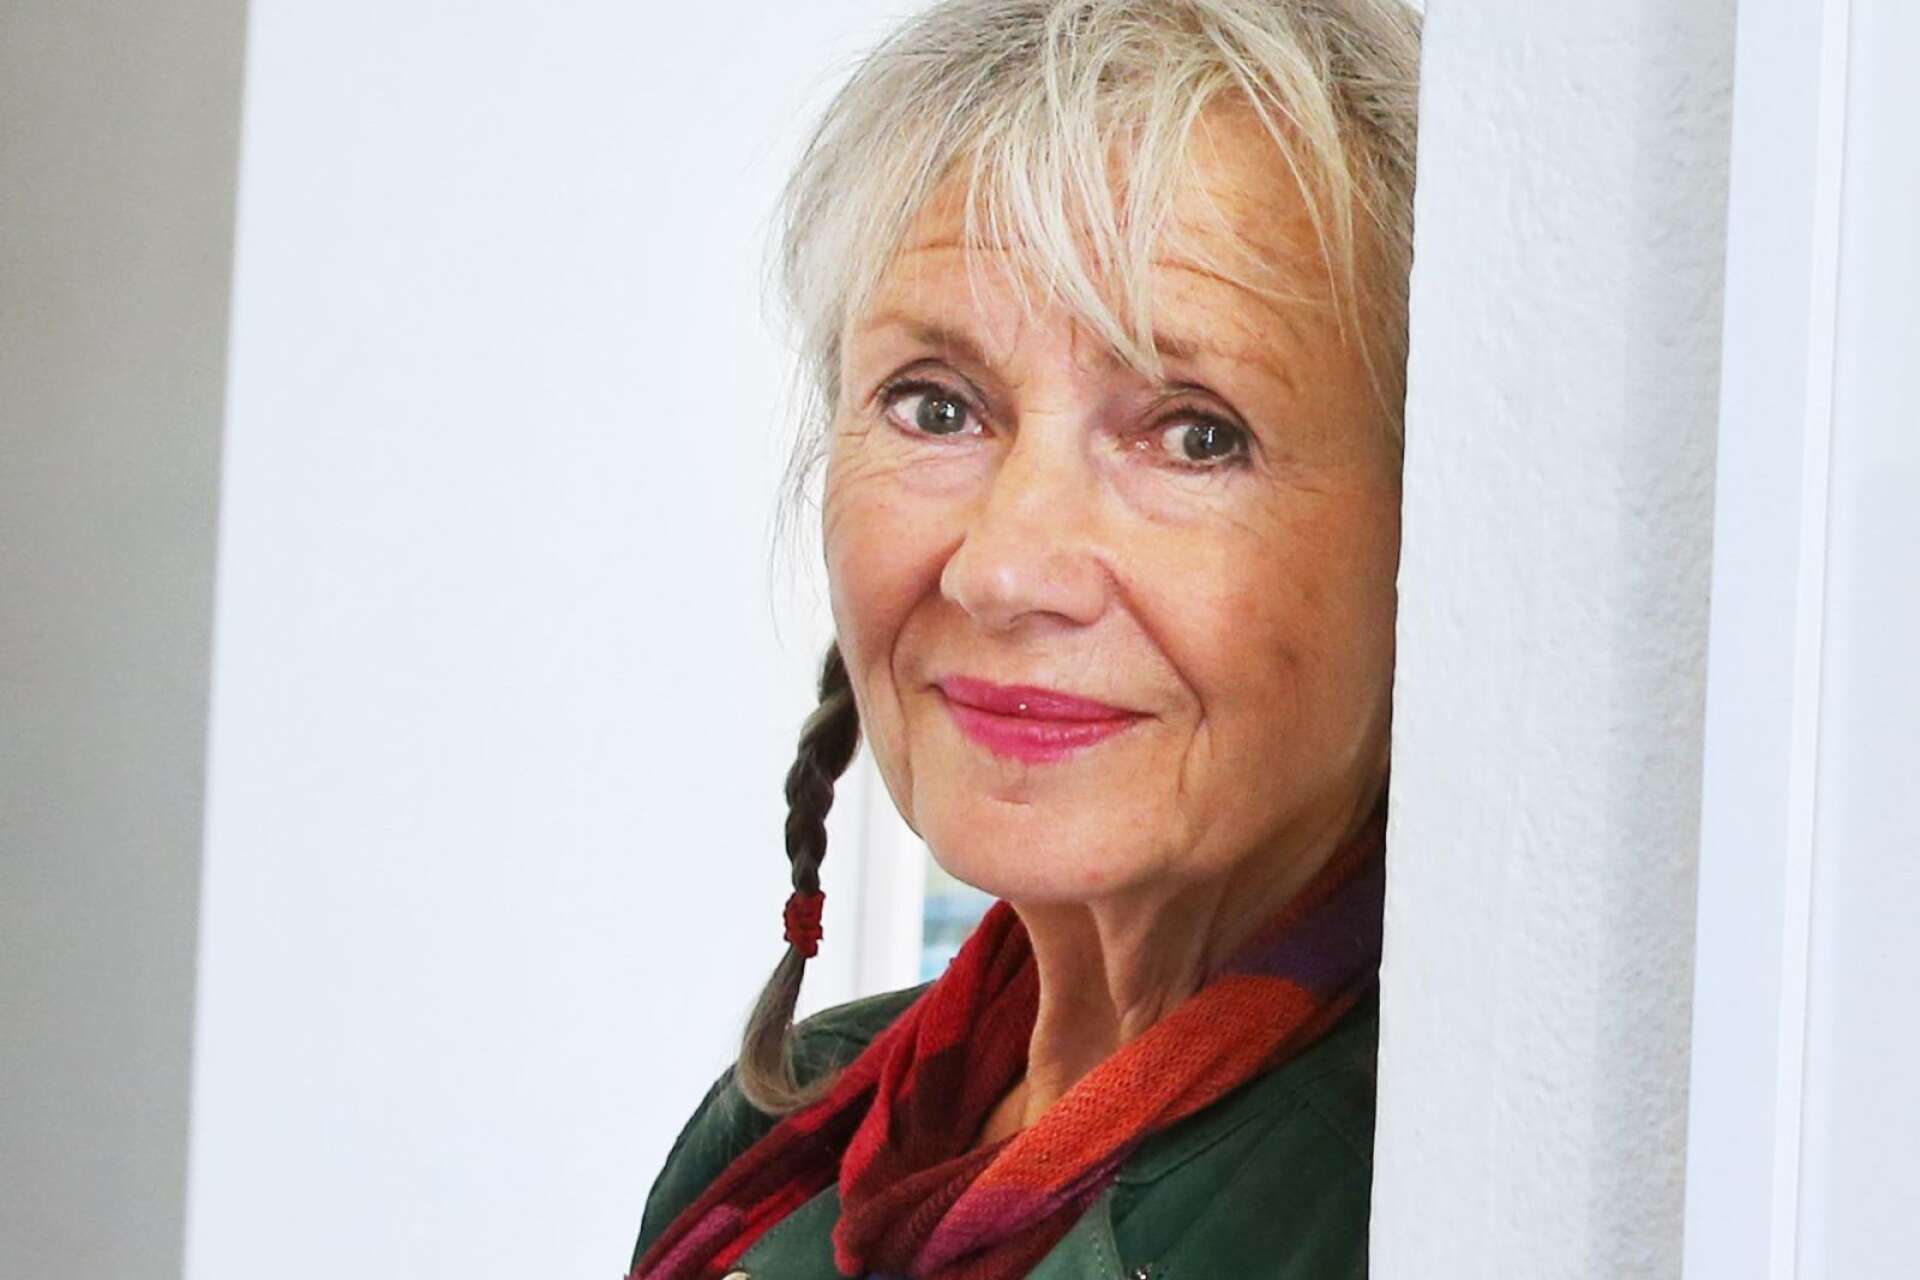 Konstnären Karin Broos bor i Östra Ämtervik och har haft Värmland som hemvist i 40 år. Nu ska hon för första gången ha en separatutställning på Rackstadmuseet i Arvika.